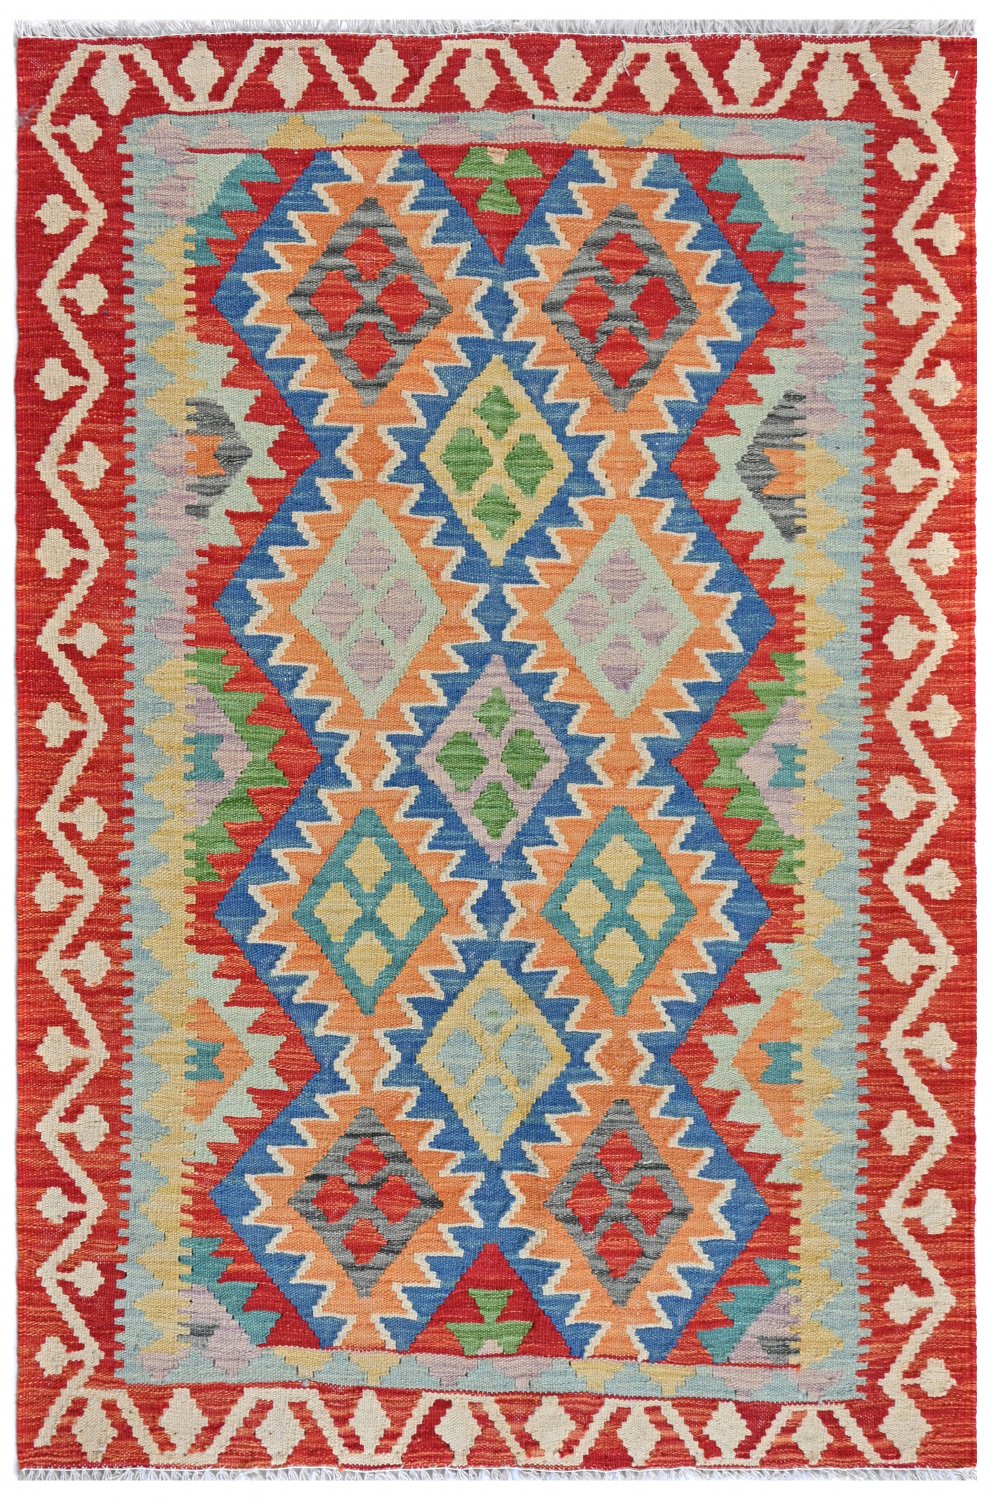 Kelim Teppich Afghan 155 x 105 cm